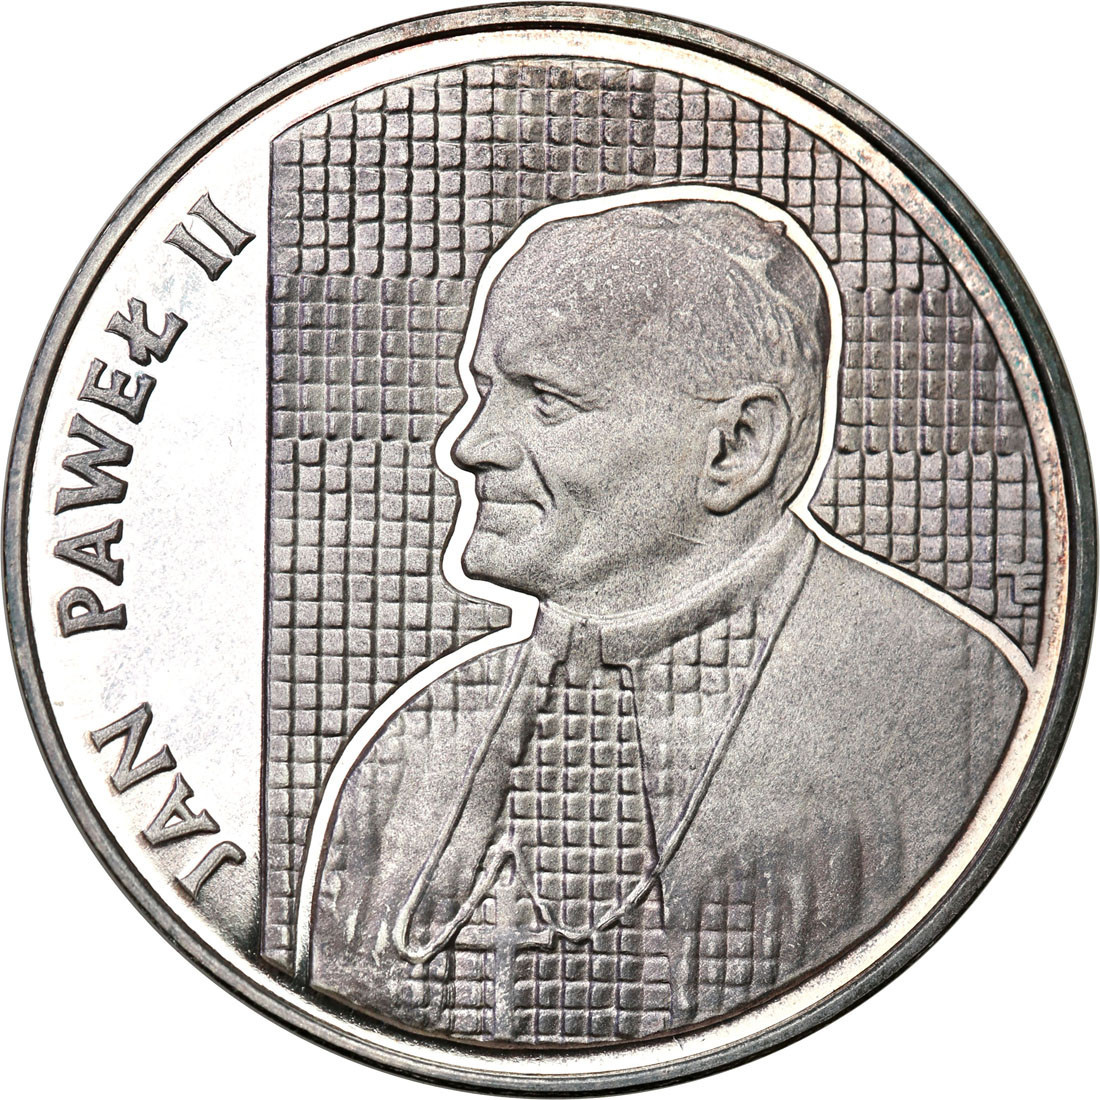 PRL. 10.000 złotych 1989 Jan Paweł II Kratka